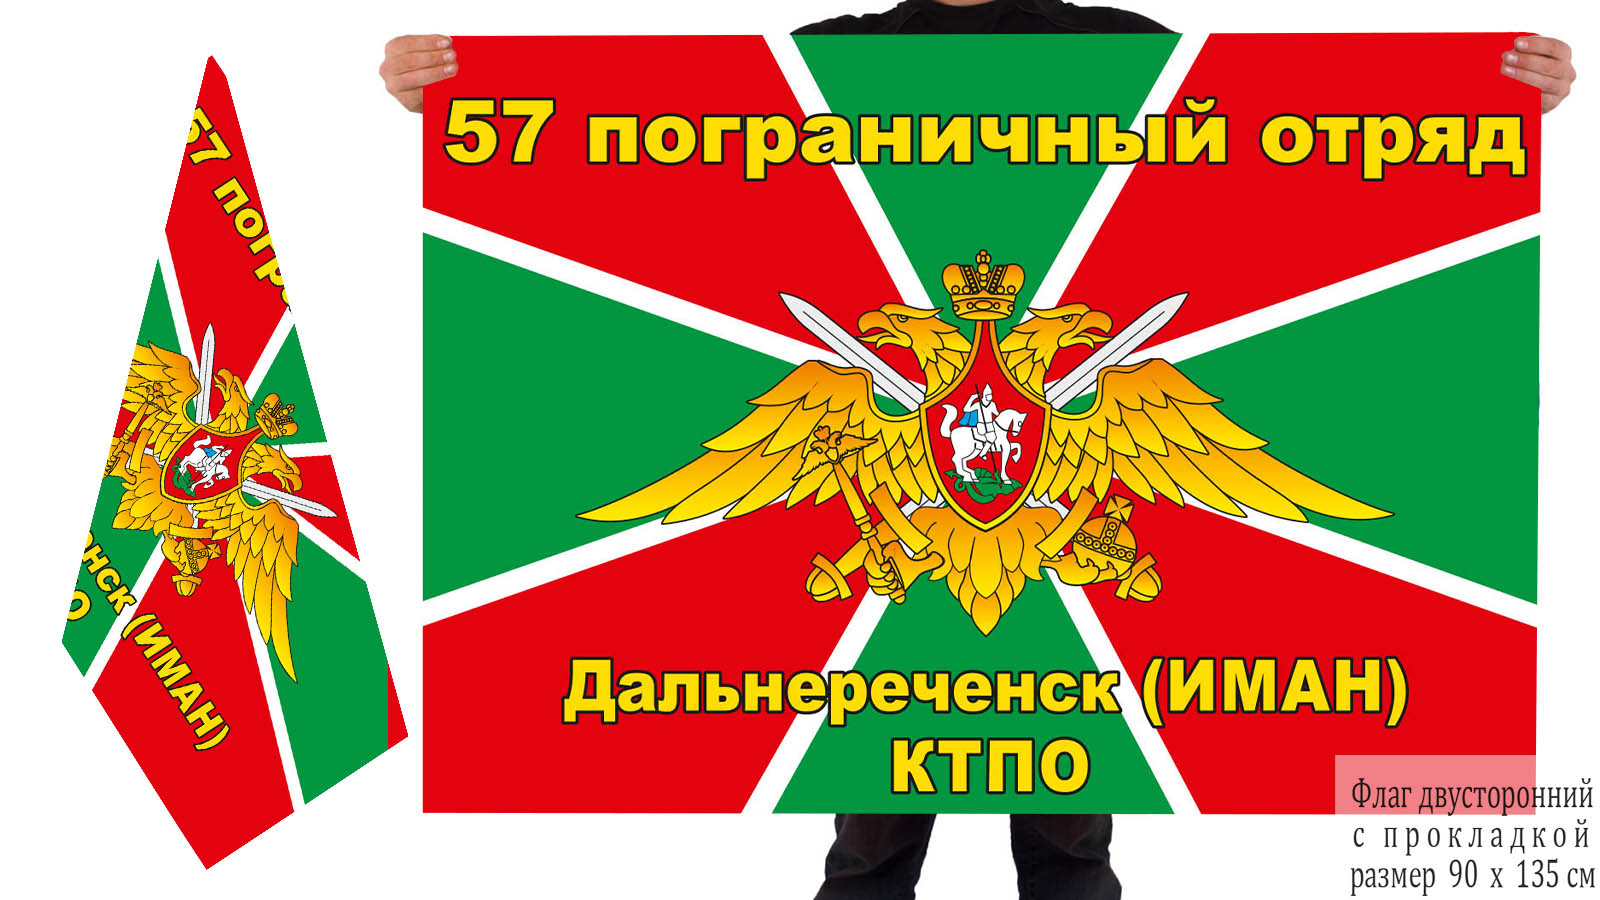  Флаг КТПО «57 пограничный отряд, Дальнереченск, Иман»